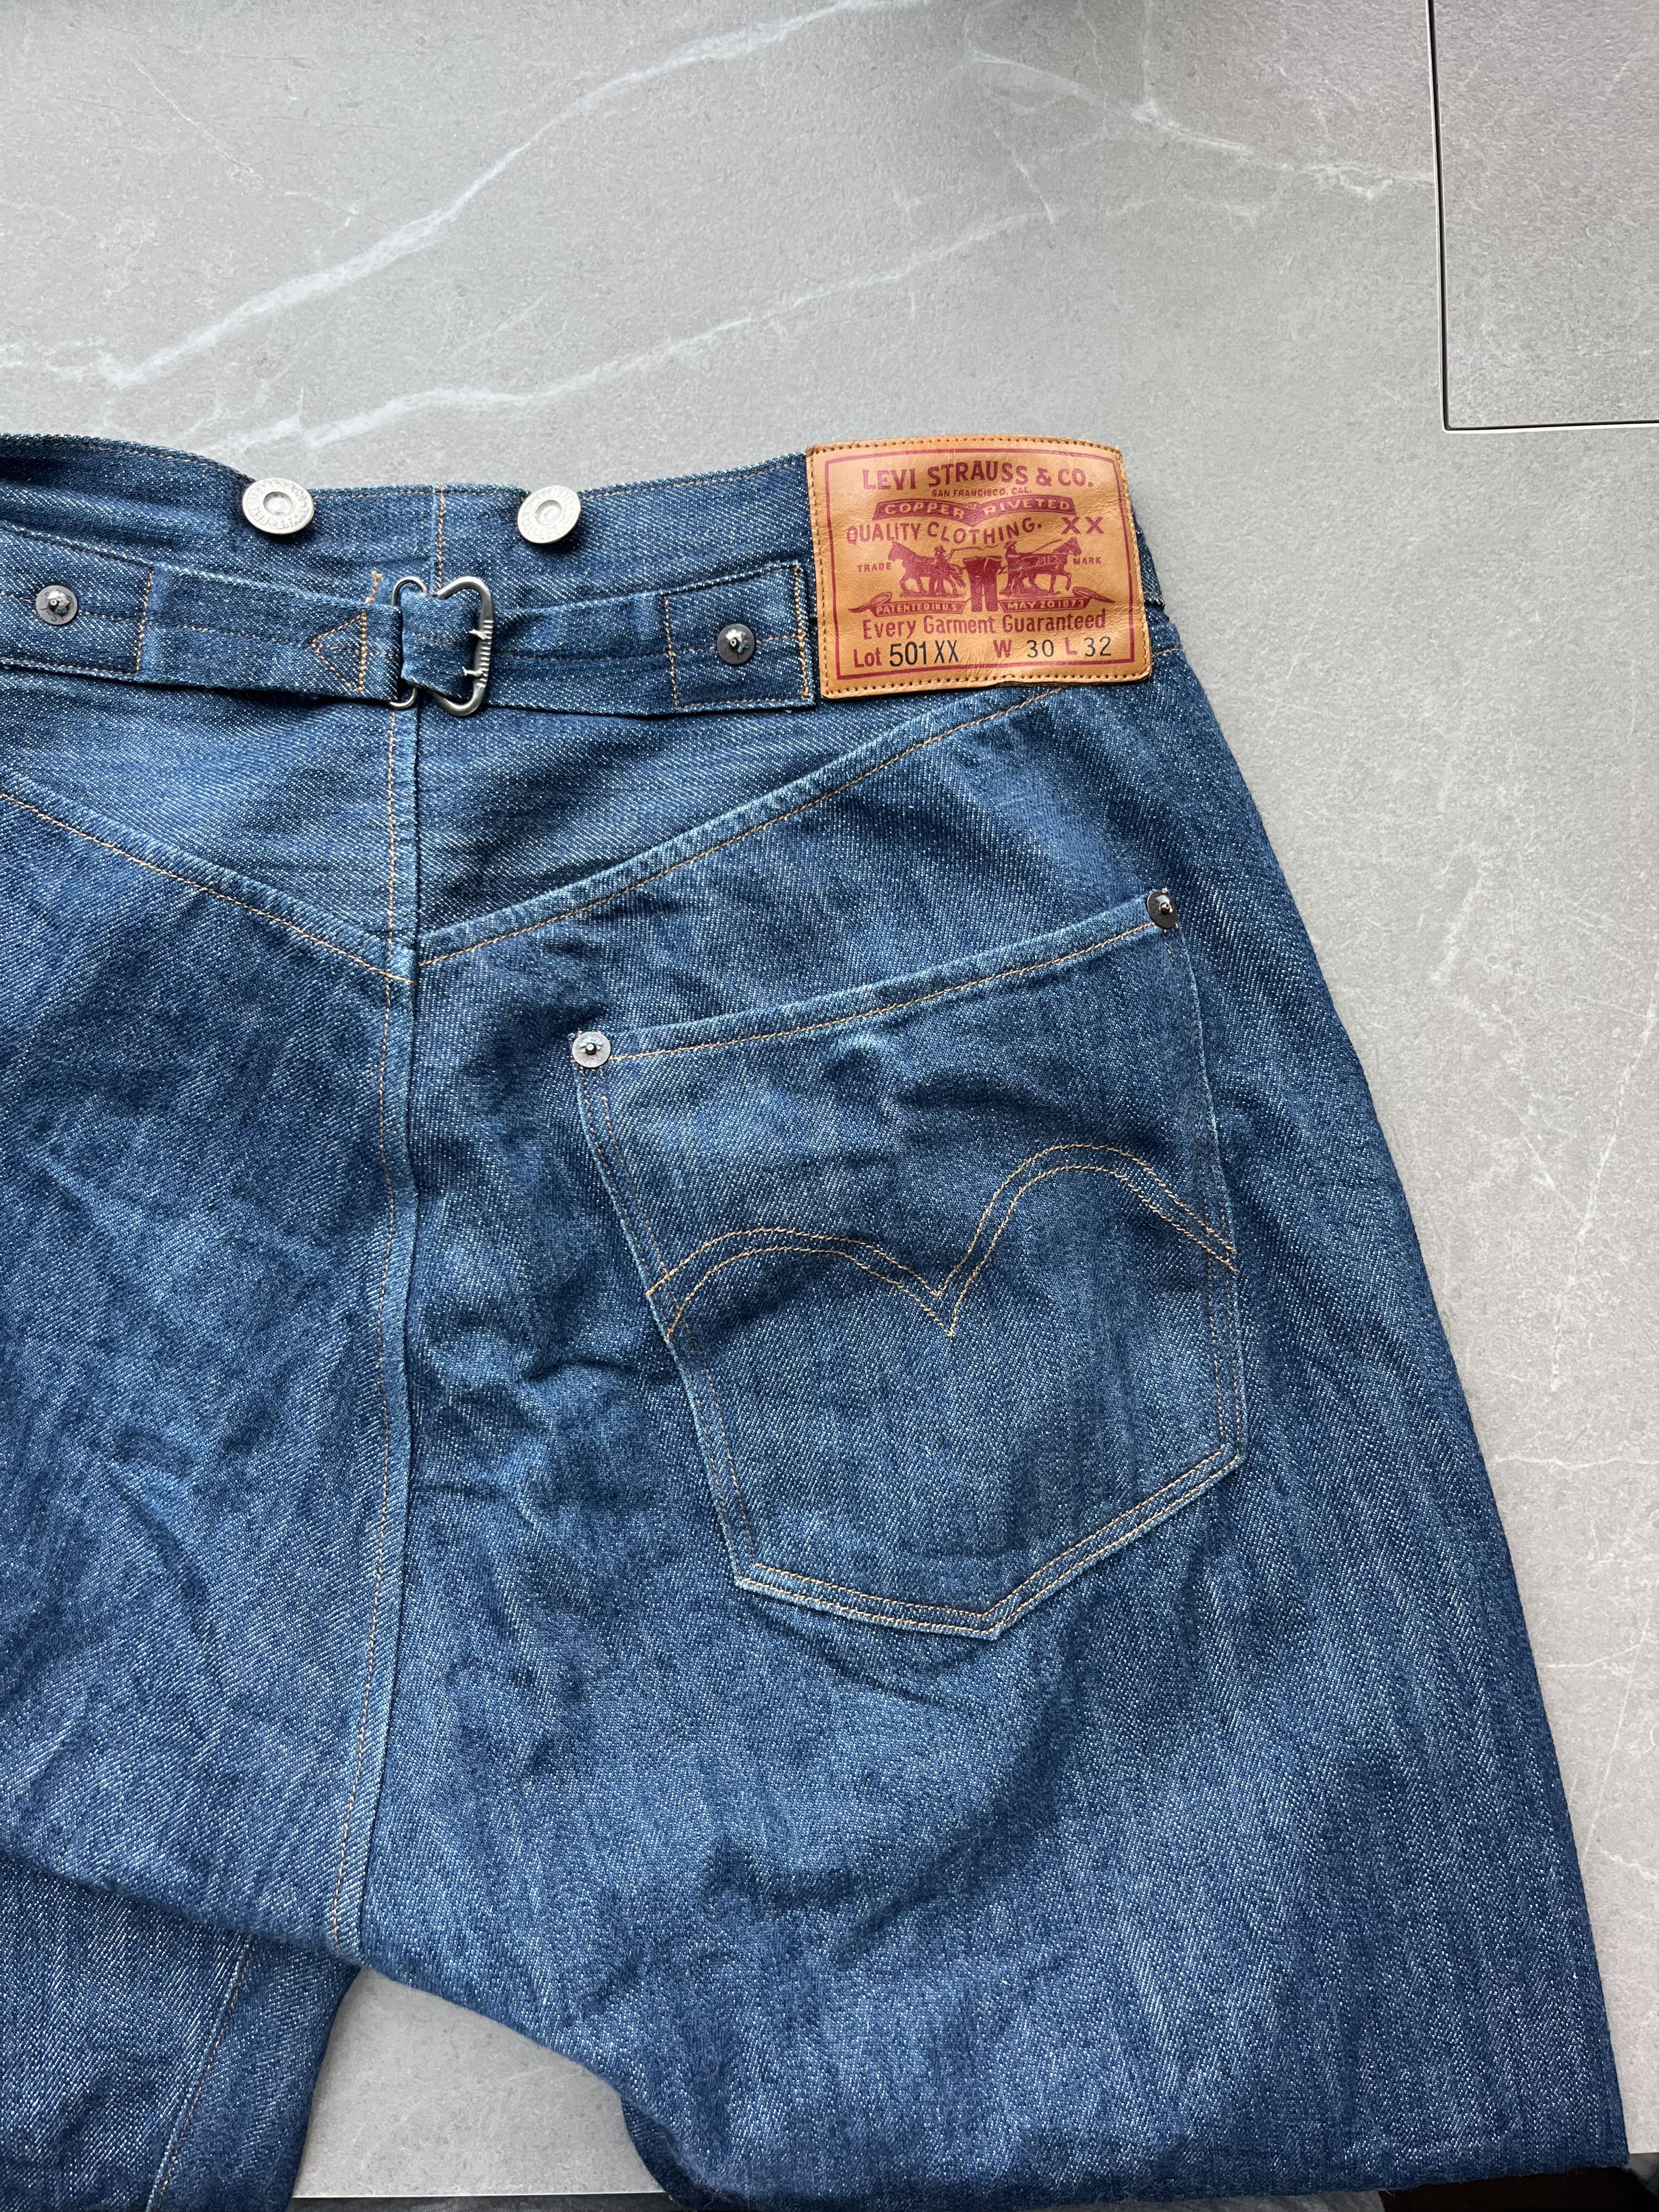 Levis 1890 501 Selvedge Jeans Men's 28 LVC Levi’s Vintage Clothing